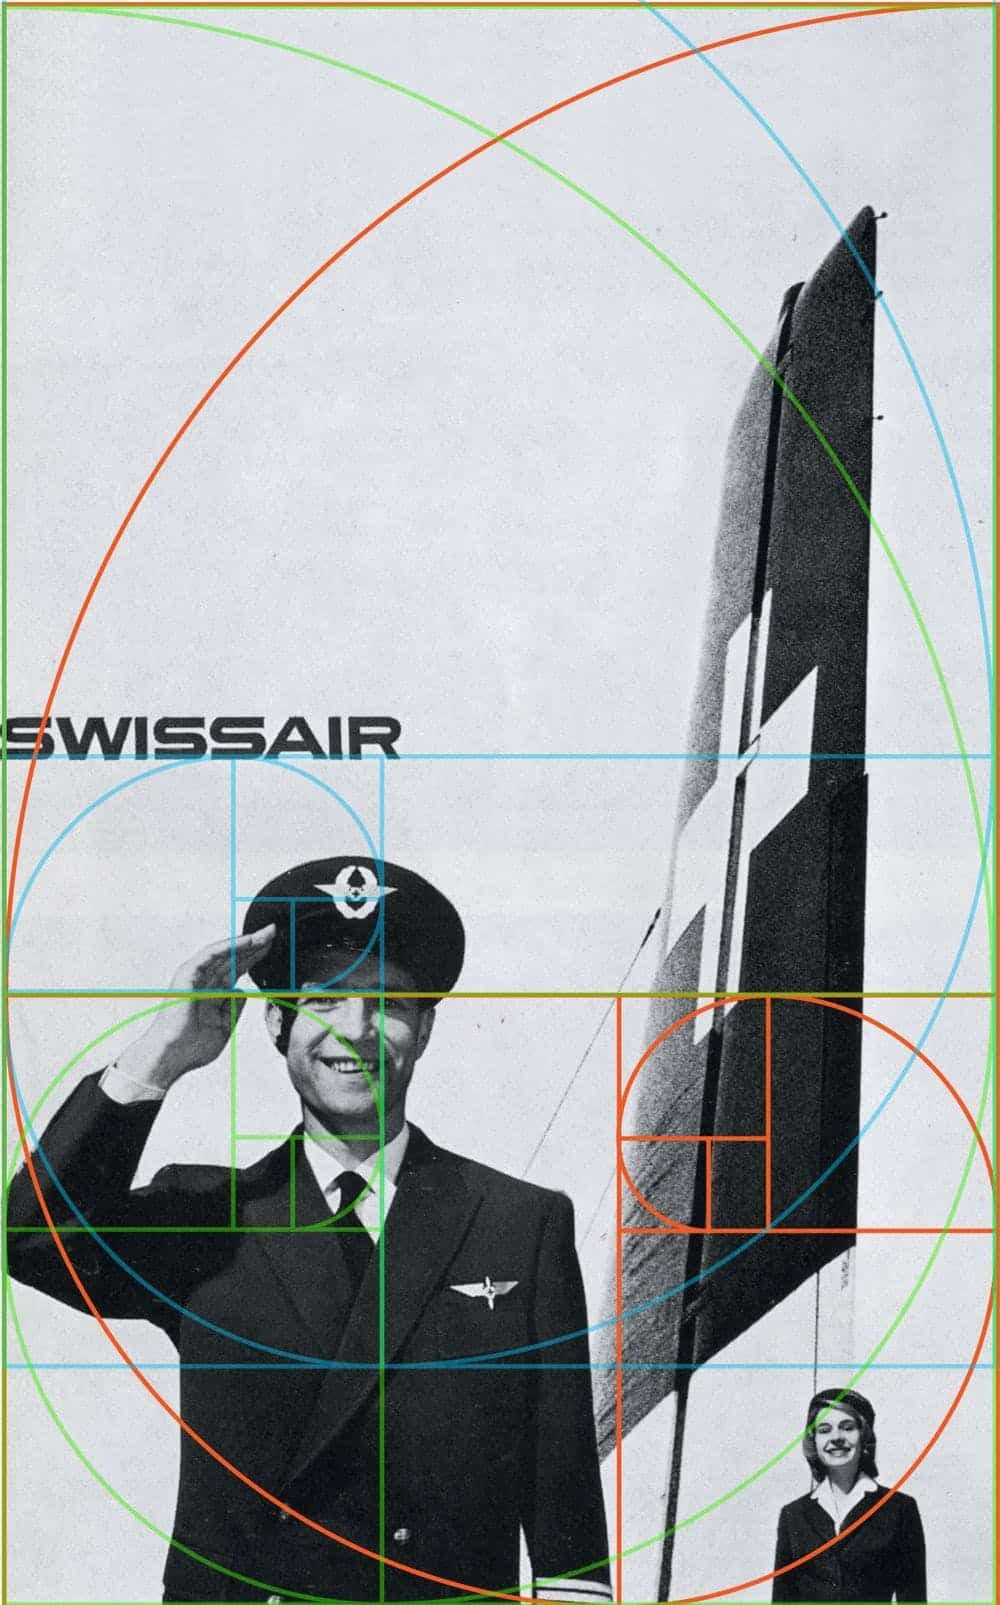 Des spirales et des rectangles d'or sont superposés sur une publicité imprimée mettant en vedette un pilote de ligne, une hôtesse de l'air et un aileron d'avion. Une publicité pour Swiss Air du graphiste Josef Müller-Brockmann intègre le nombre d'or. Notes graphiques